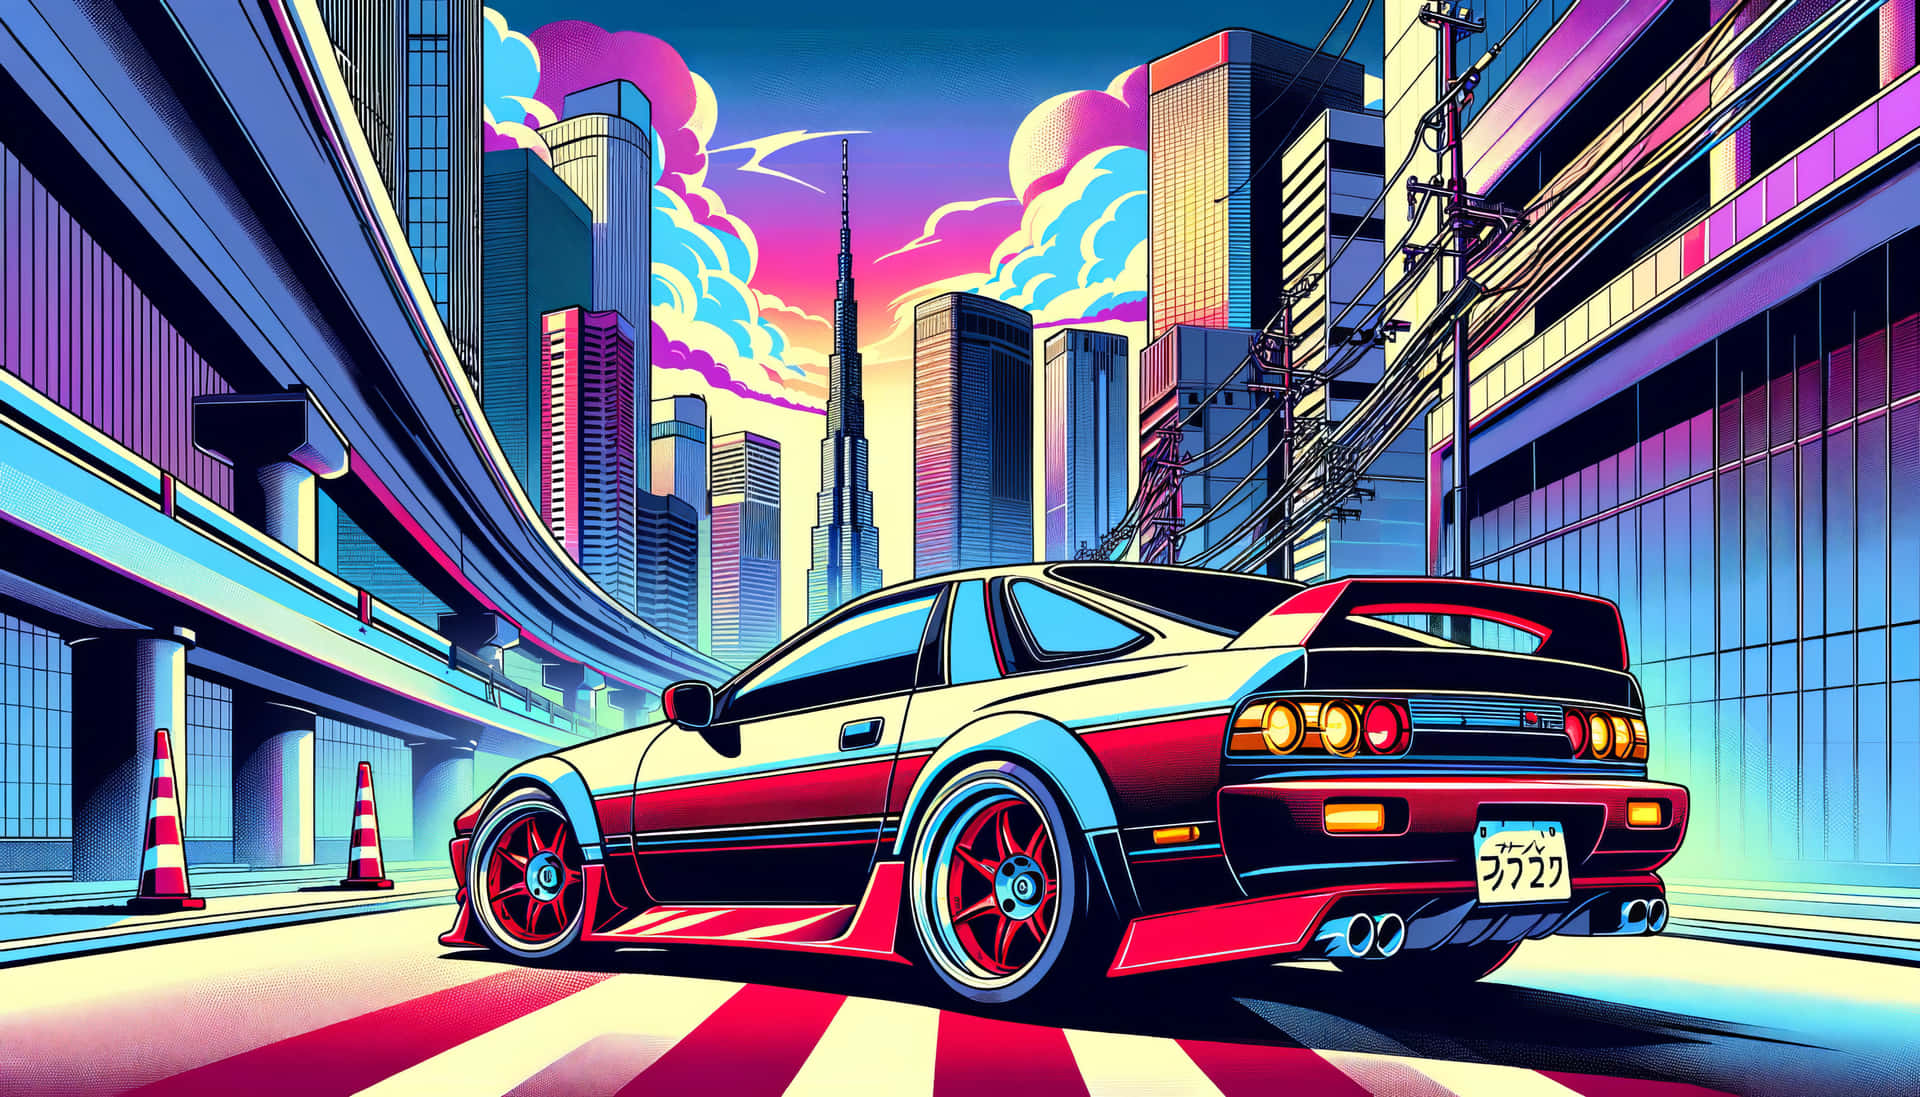 Retro Futuristic Cityscape Car Illustration Wallpaper